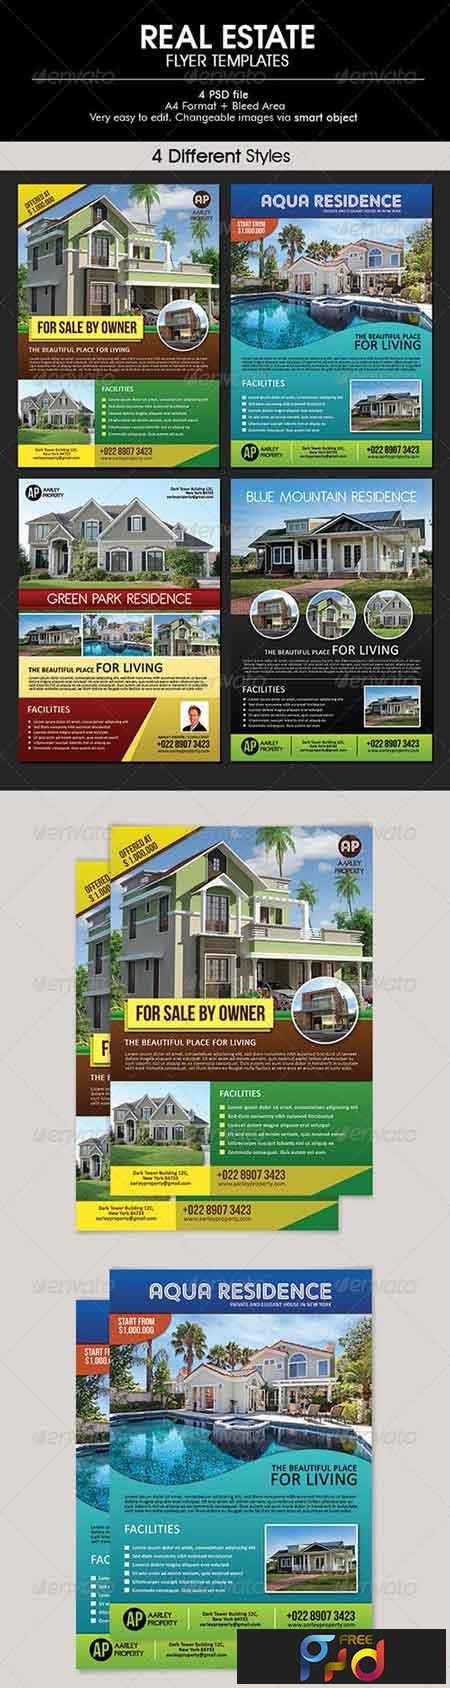 Real Estate Flyer 6395908 1